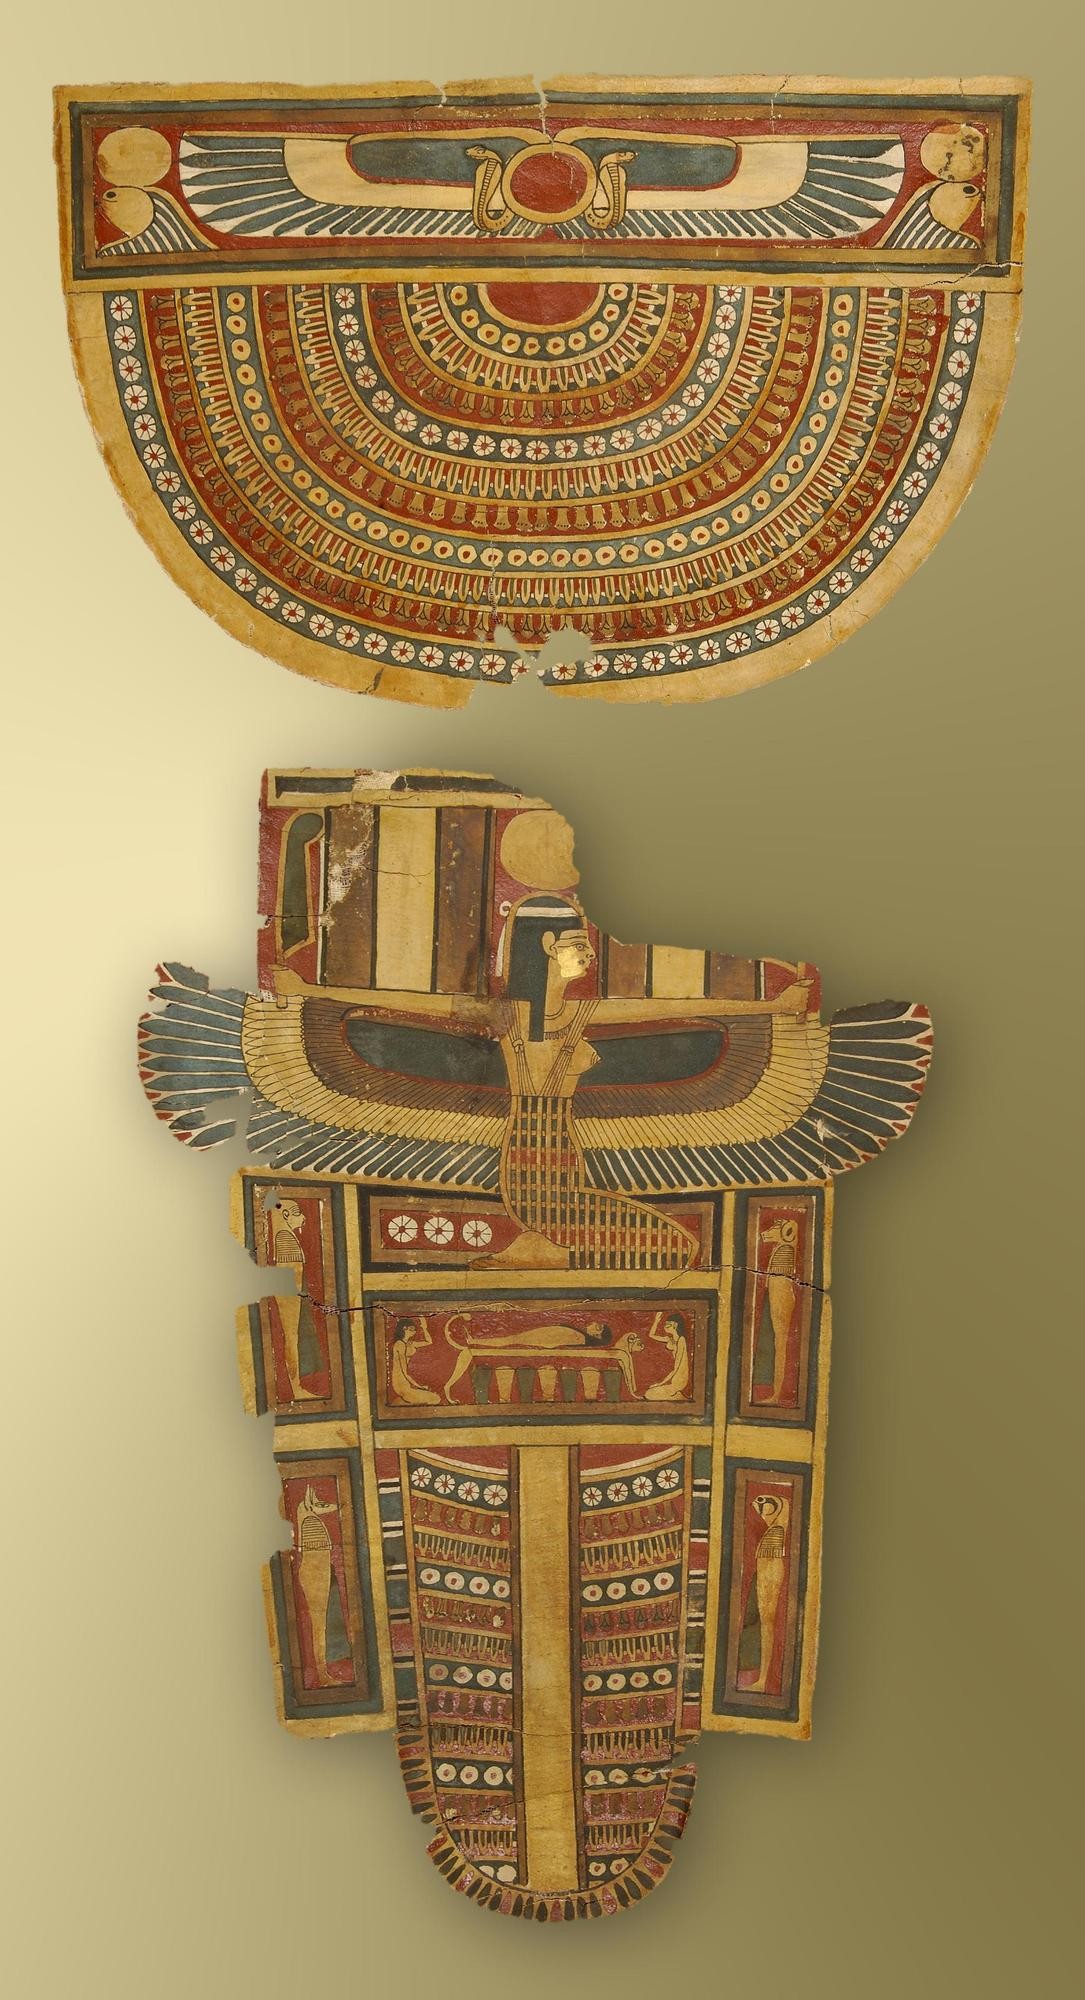 16052021_Un Vaudois offre une momie égyptienne au Musée d’Yverdon